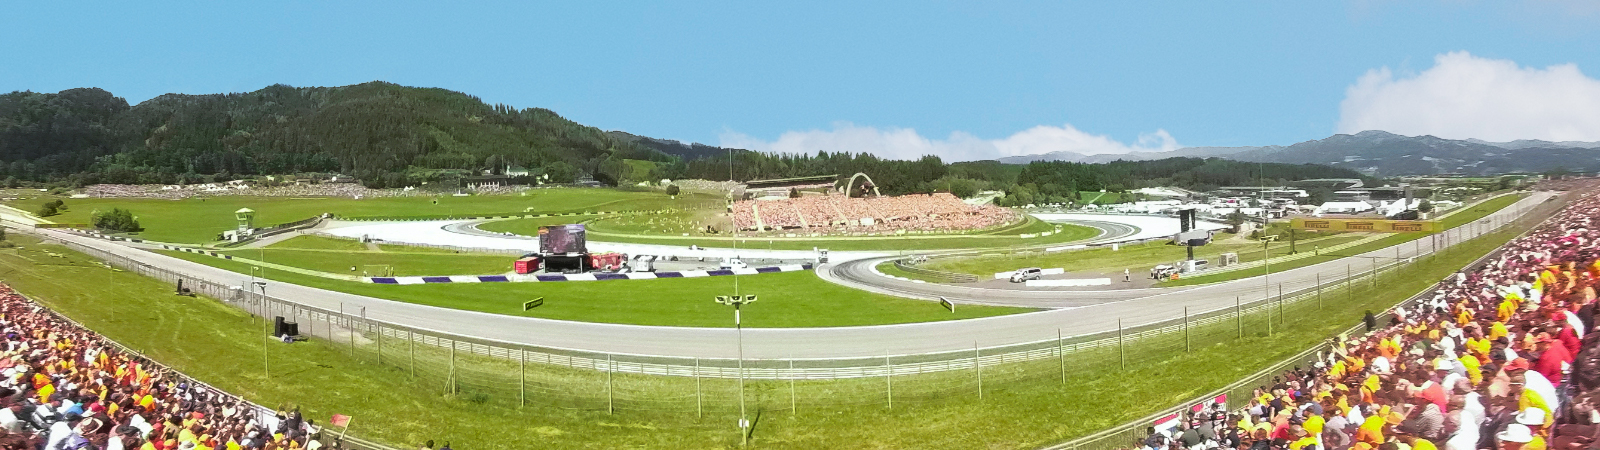 Bilet 3 Corner Steiermark | F1 Austria 2023 | Red Bull Ring | Spielberg | Oficjalne bilety | www.F1austria.com